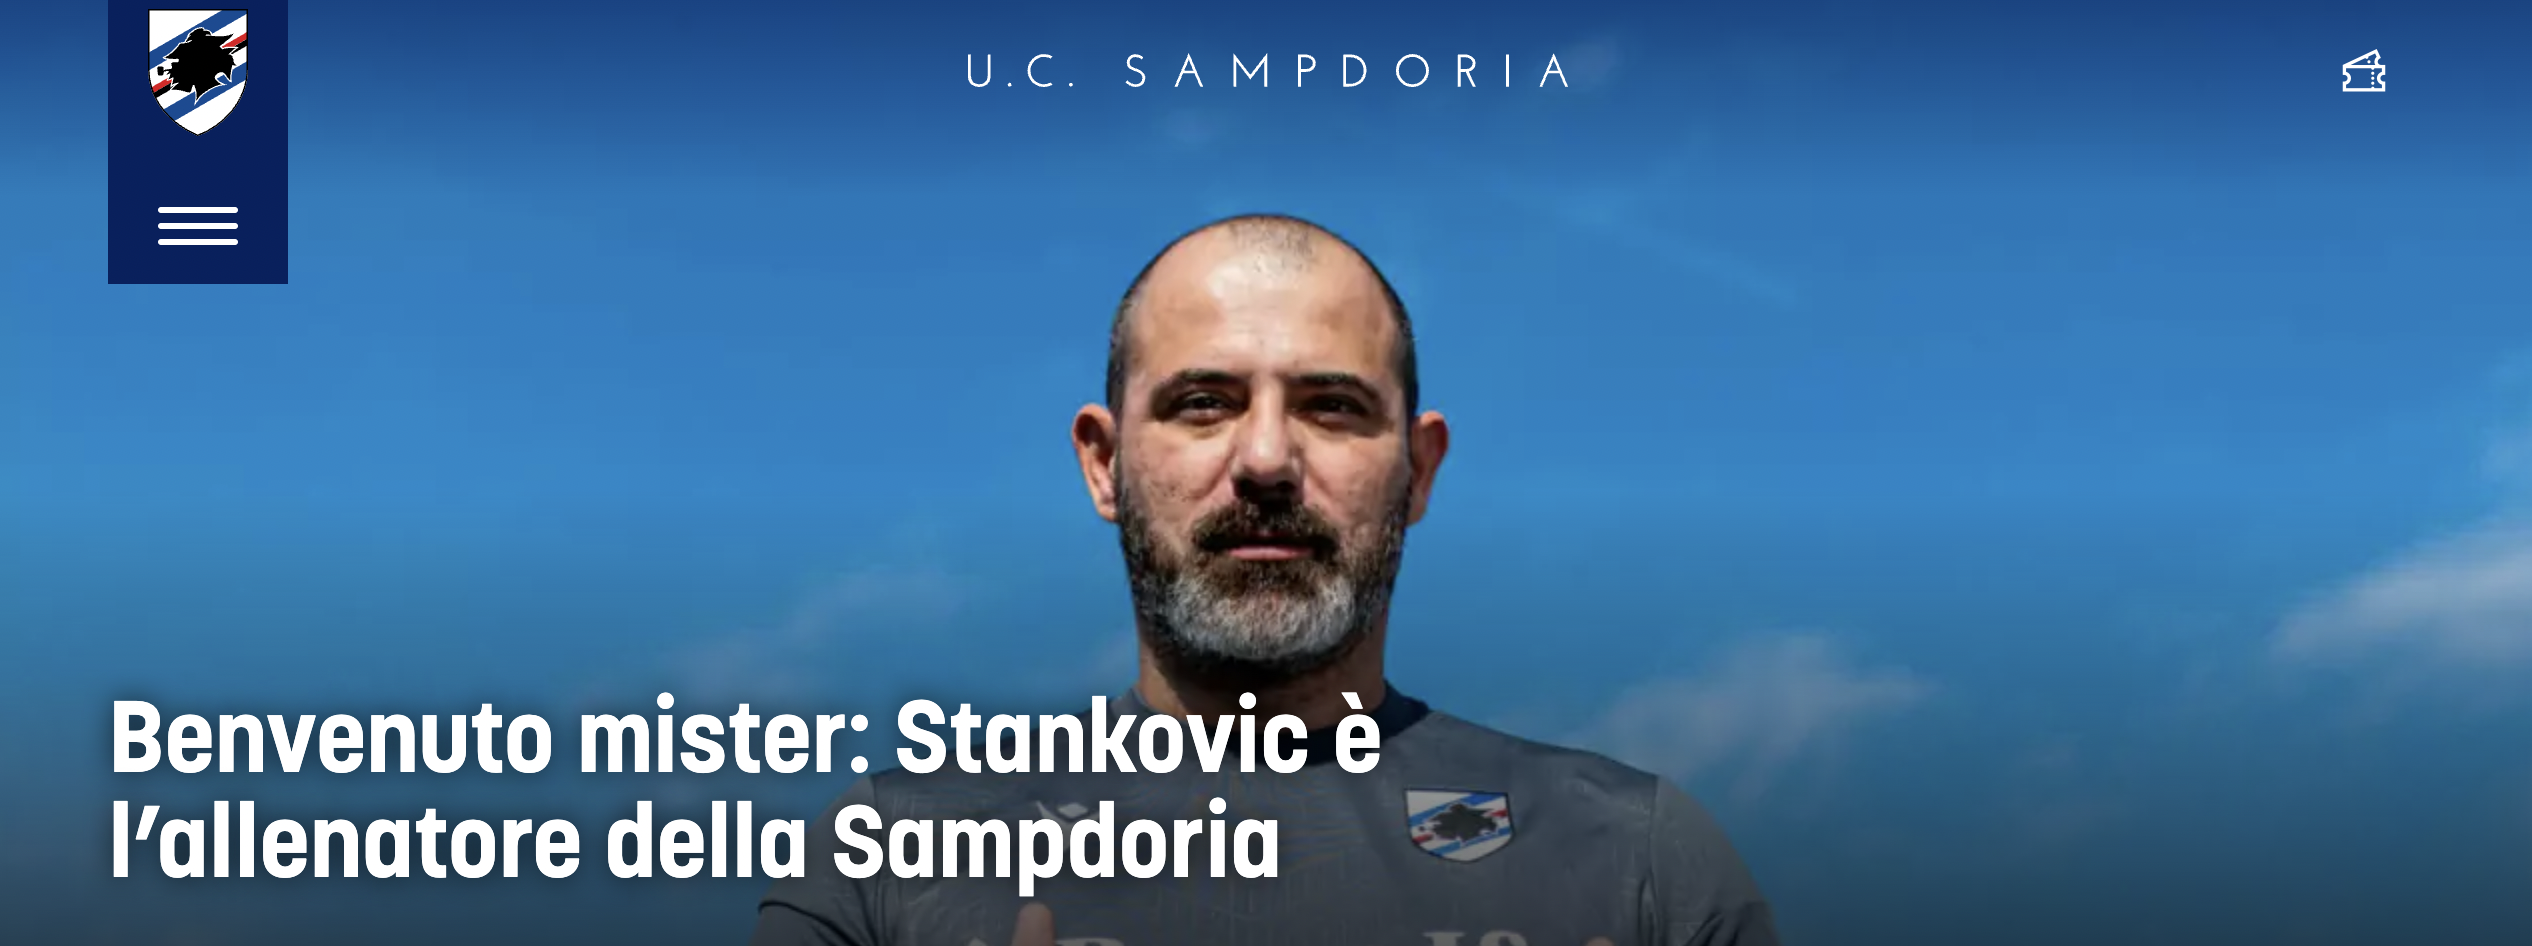 Bologna Sampdoria Stankovic